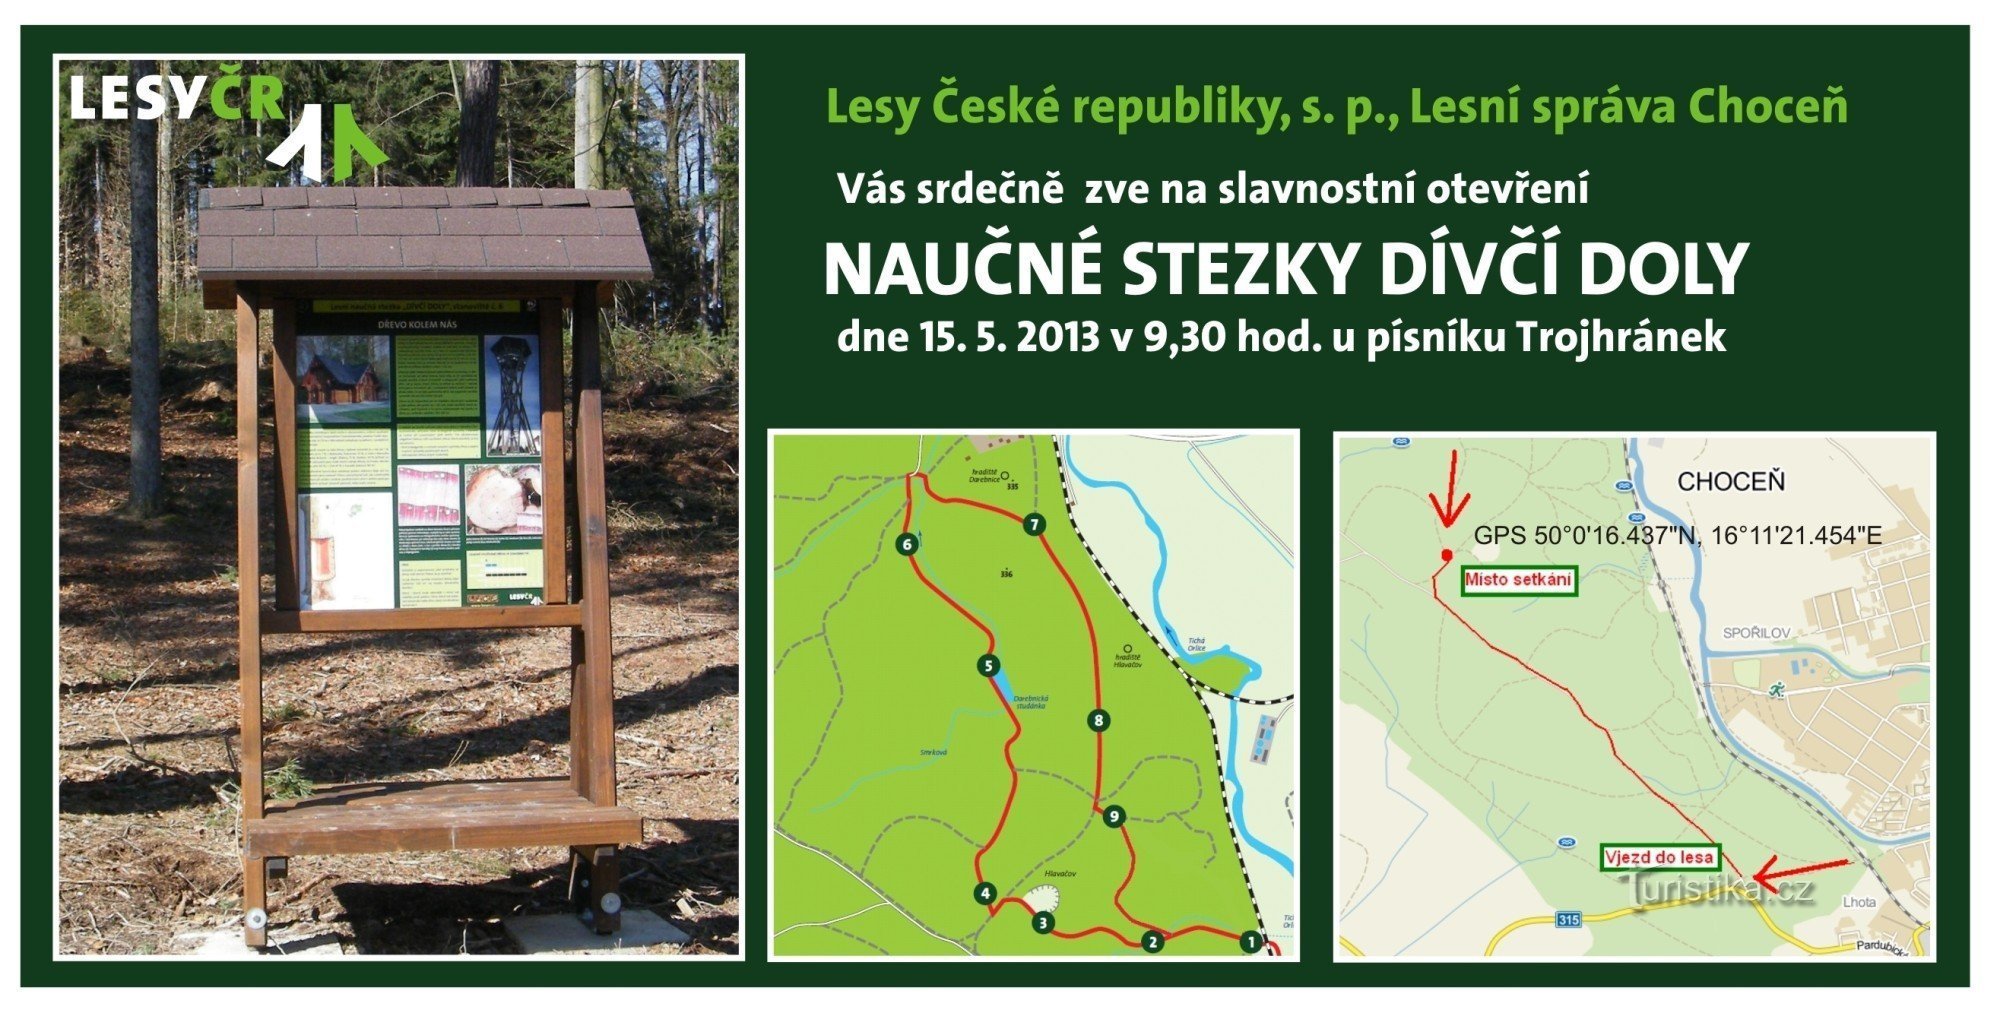 Στο Choceňsko Lesy ČR ανοίγει ένα νέο εκπαιδευτικό μονοπάτι Dívčí doly